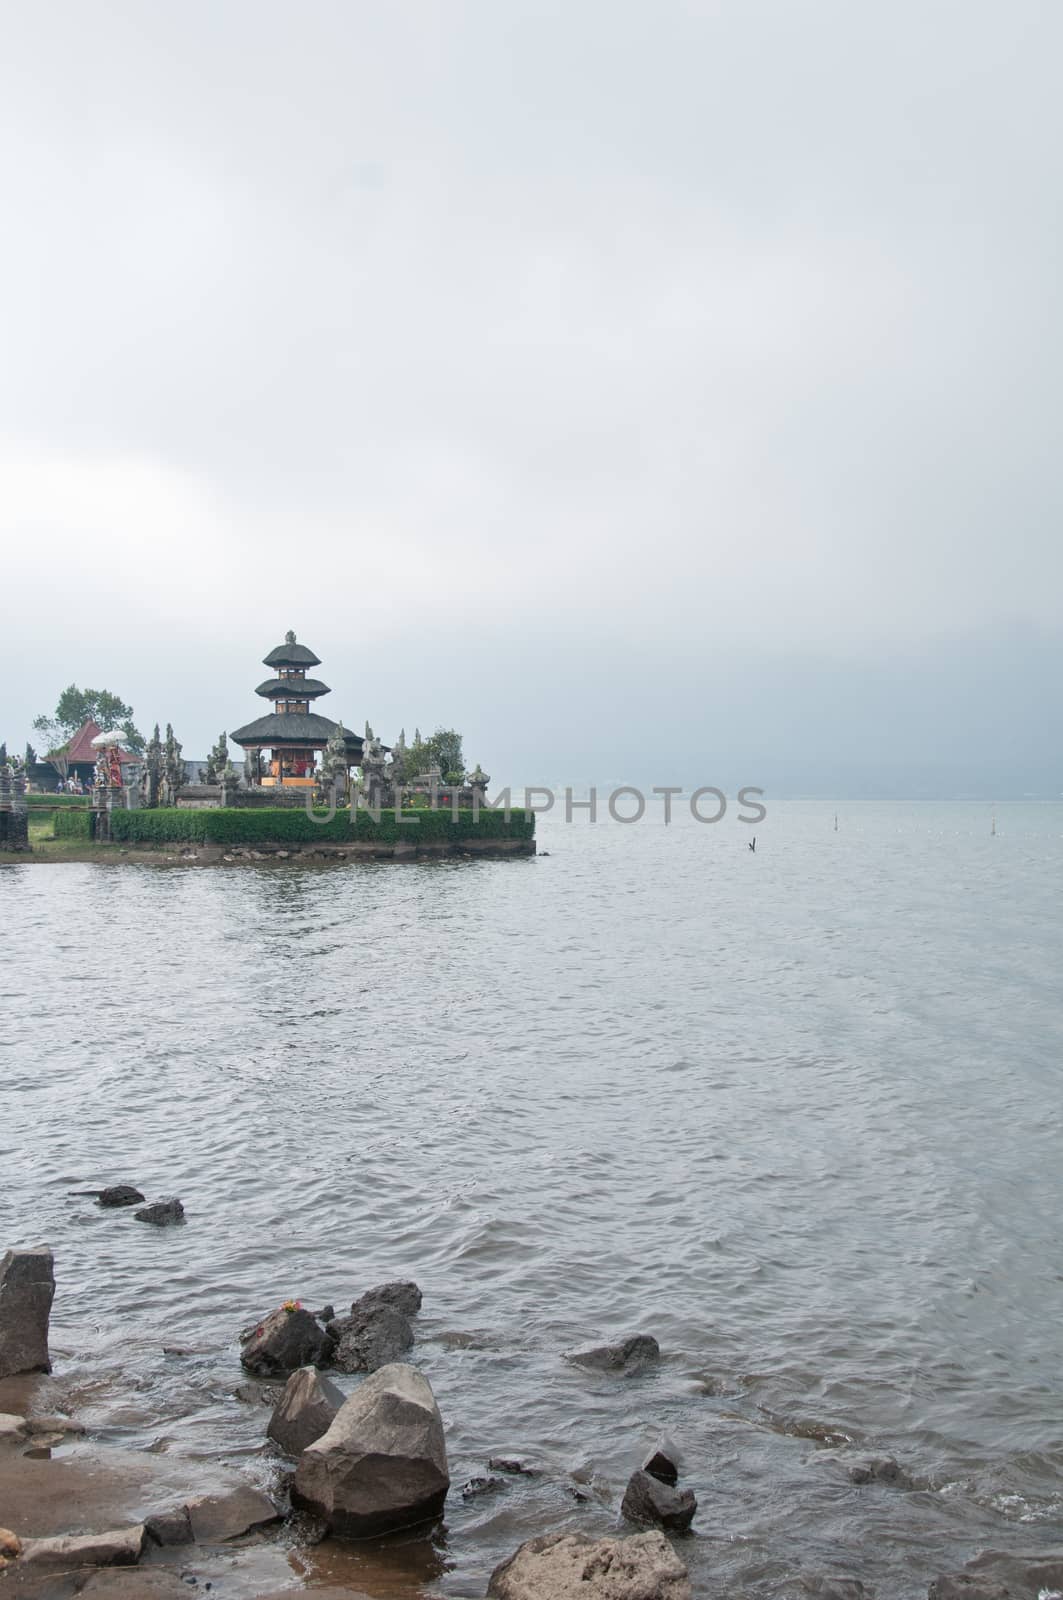 Pura Ulun Danu Beratan famous Hindu Bali temple and a lake